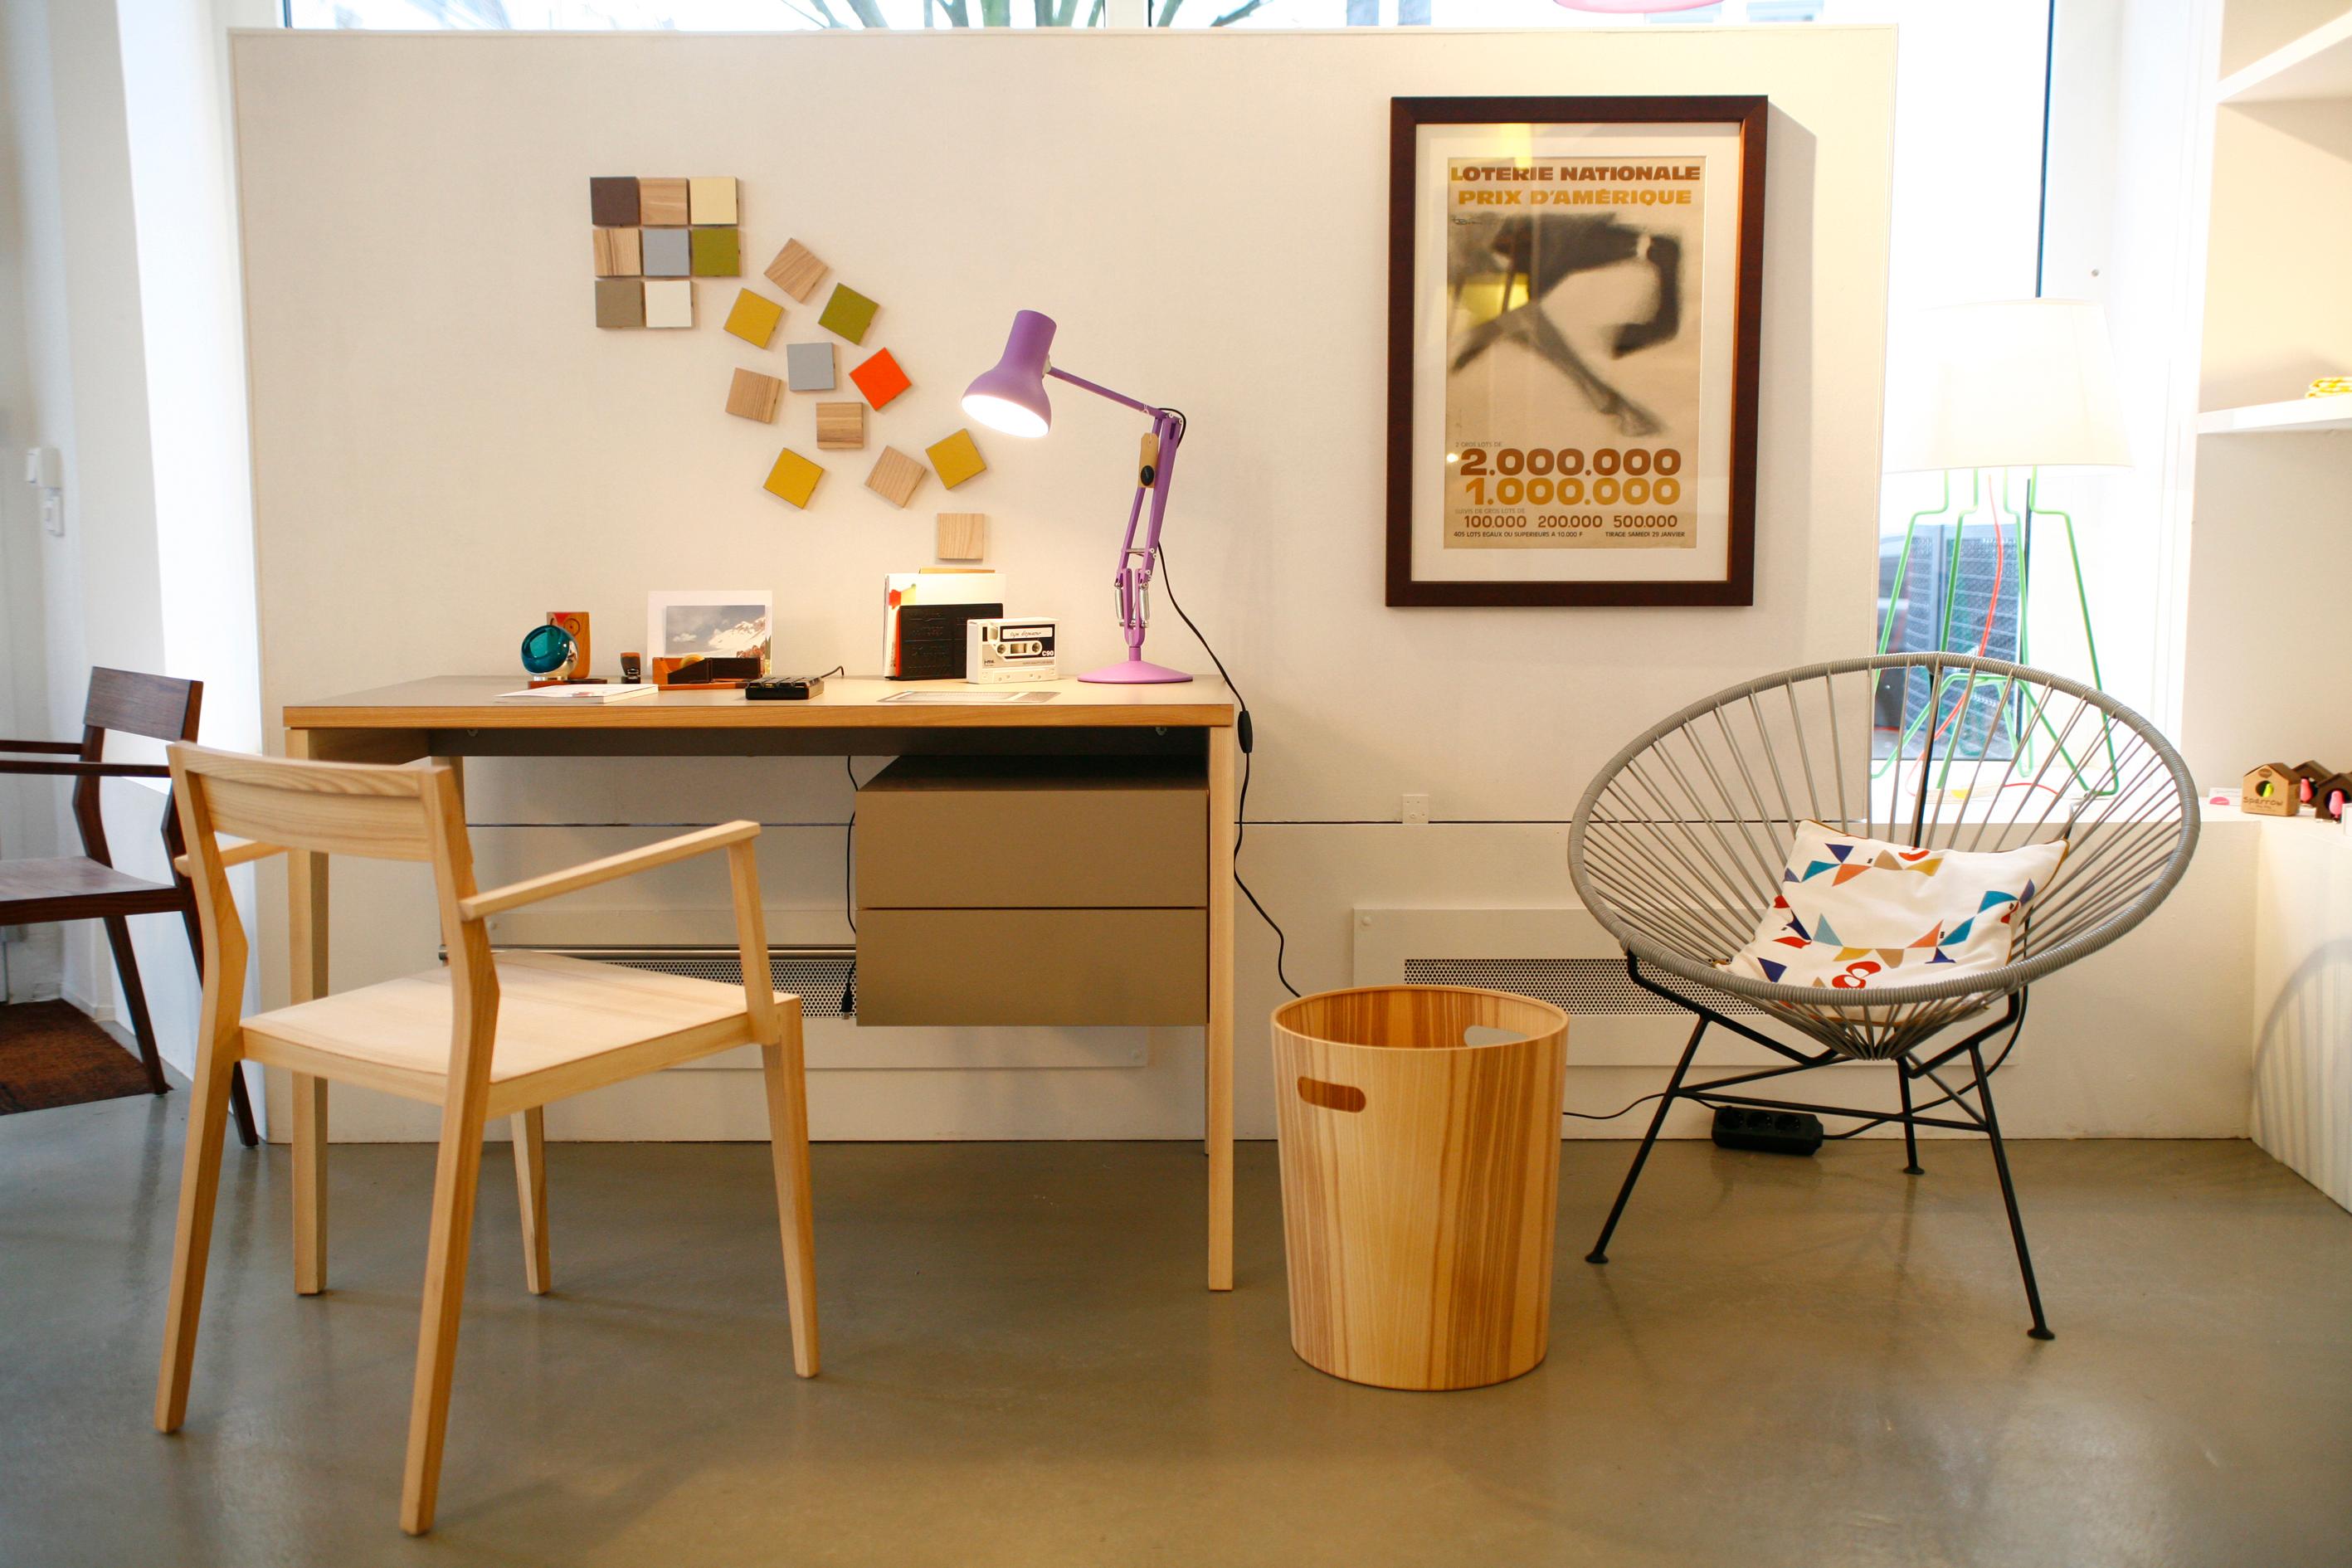 Mint Schreibtisch/Stuhl #stuhl #schreibtisch #wandgestaltung #holzstuhl #mülleimer #acapulcochair ©Toendel